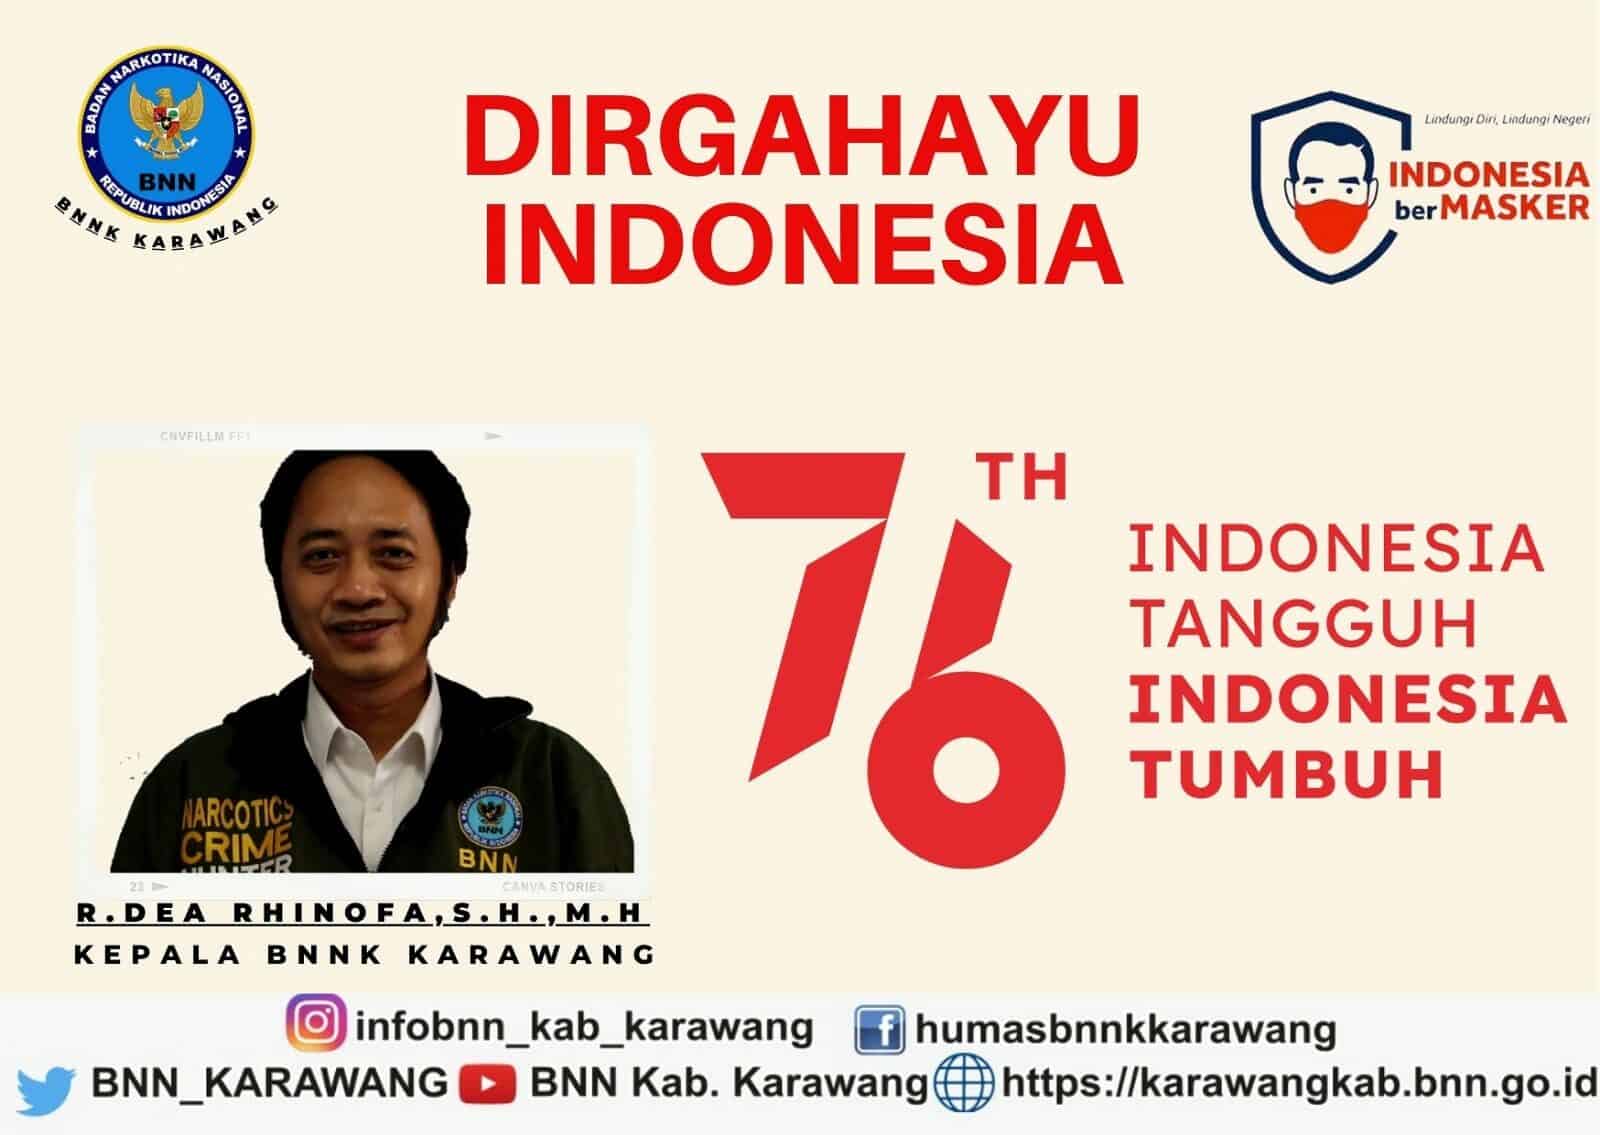 DIRGAHAYU INDONESIA KE-76 “INDONESIA TANGGUH I